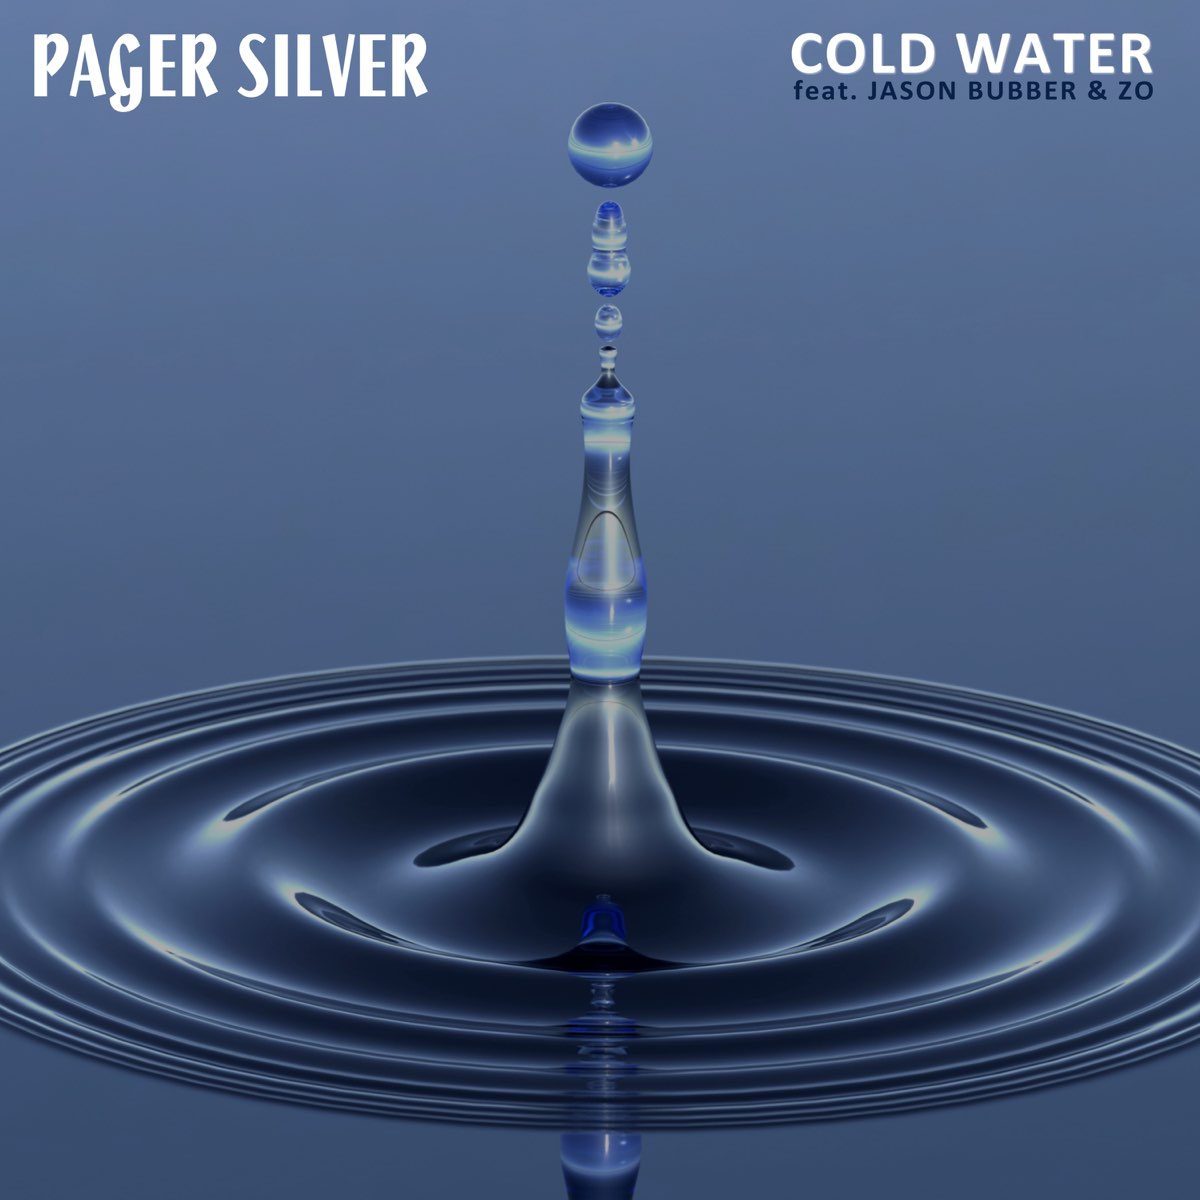 Слушать про воду. Cold Water. Cold Water Water. Aim Cold Water Music. Wasser.